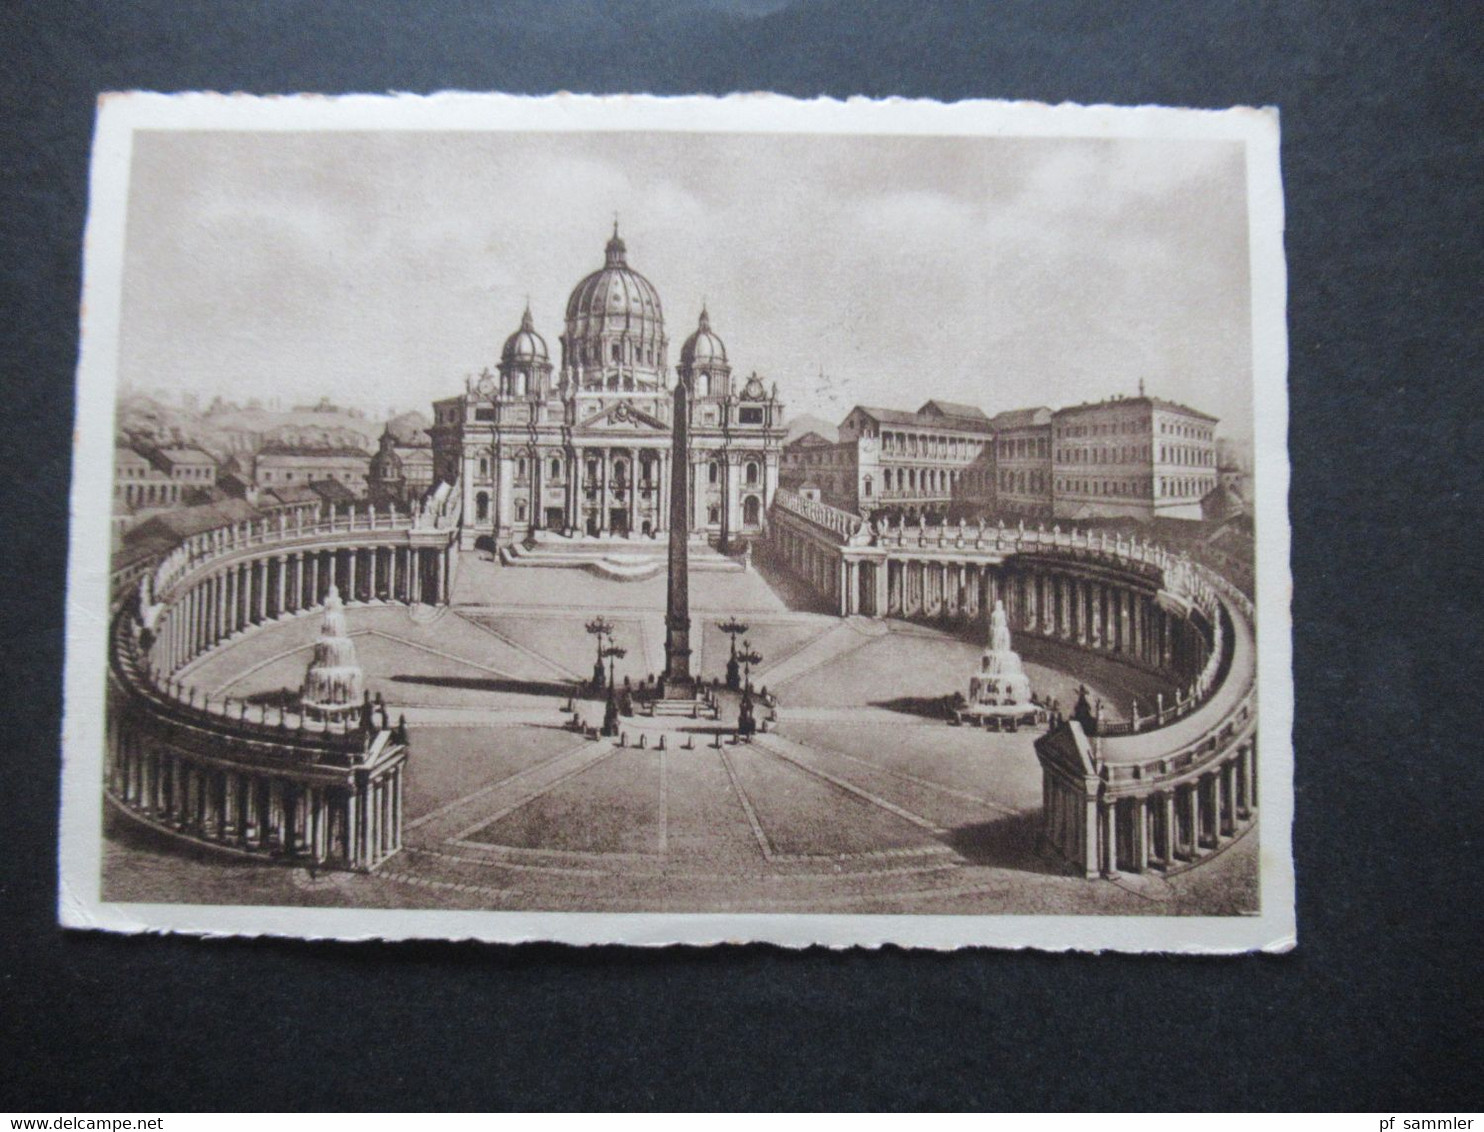 1938 AK Einschreiben Citta Del Vaticano Frankiert Mit Dem Satz Weltausstellung Der Katholischen Presse Nr. 51 - 58 - Covers & Documents